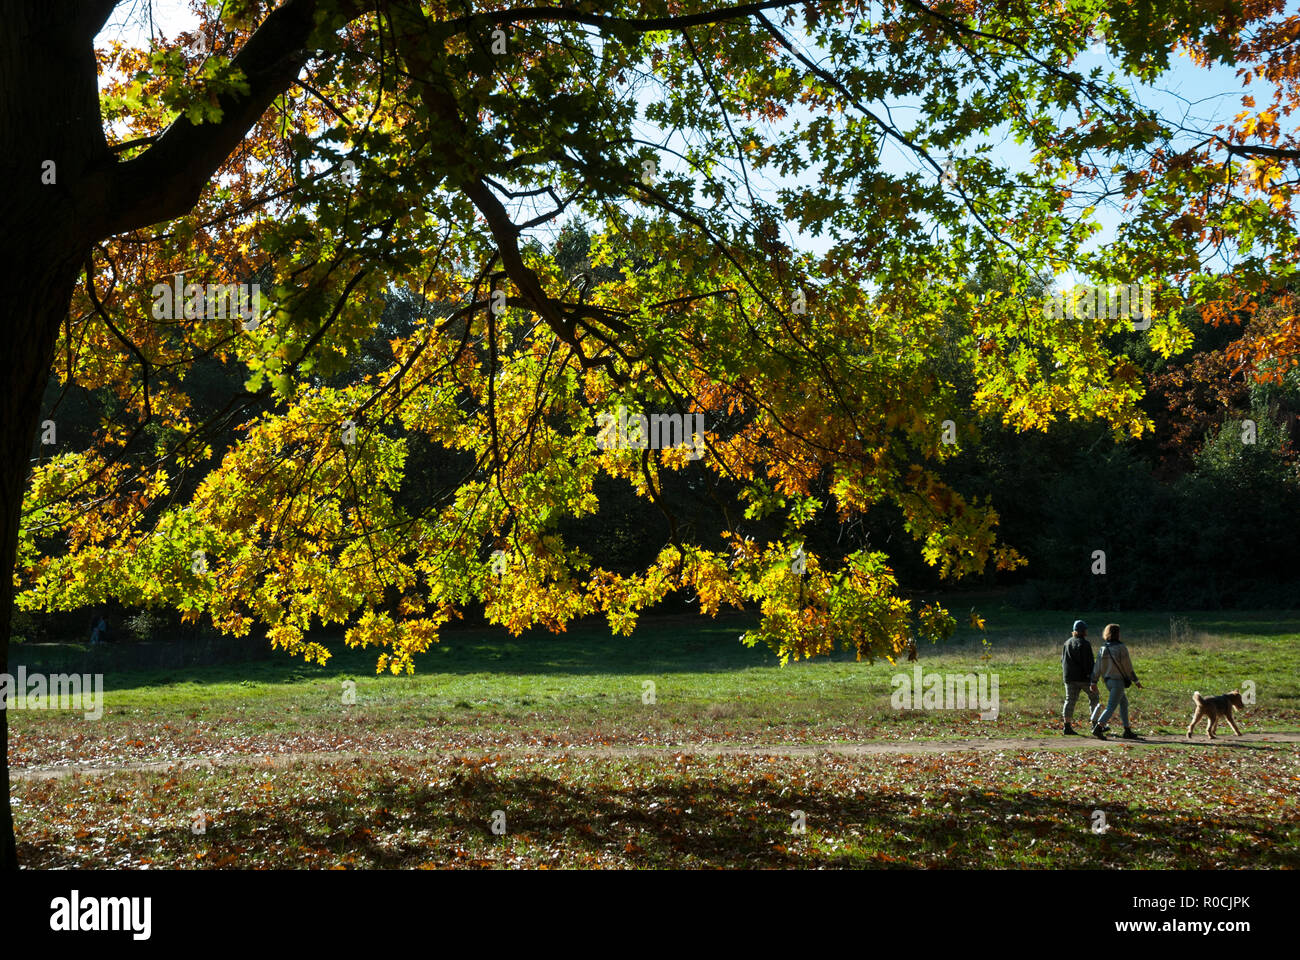 Herbstfarben in Hampstead Heath mit scheint die Sonne auf goldenem Eichenlaub im Vordergrund und ein paar wenige ihren Hund. Stockfoto